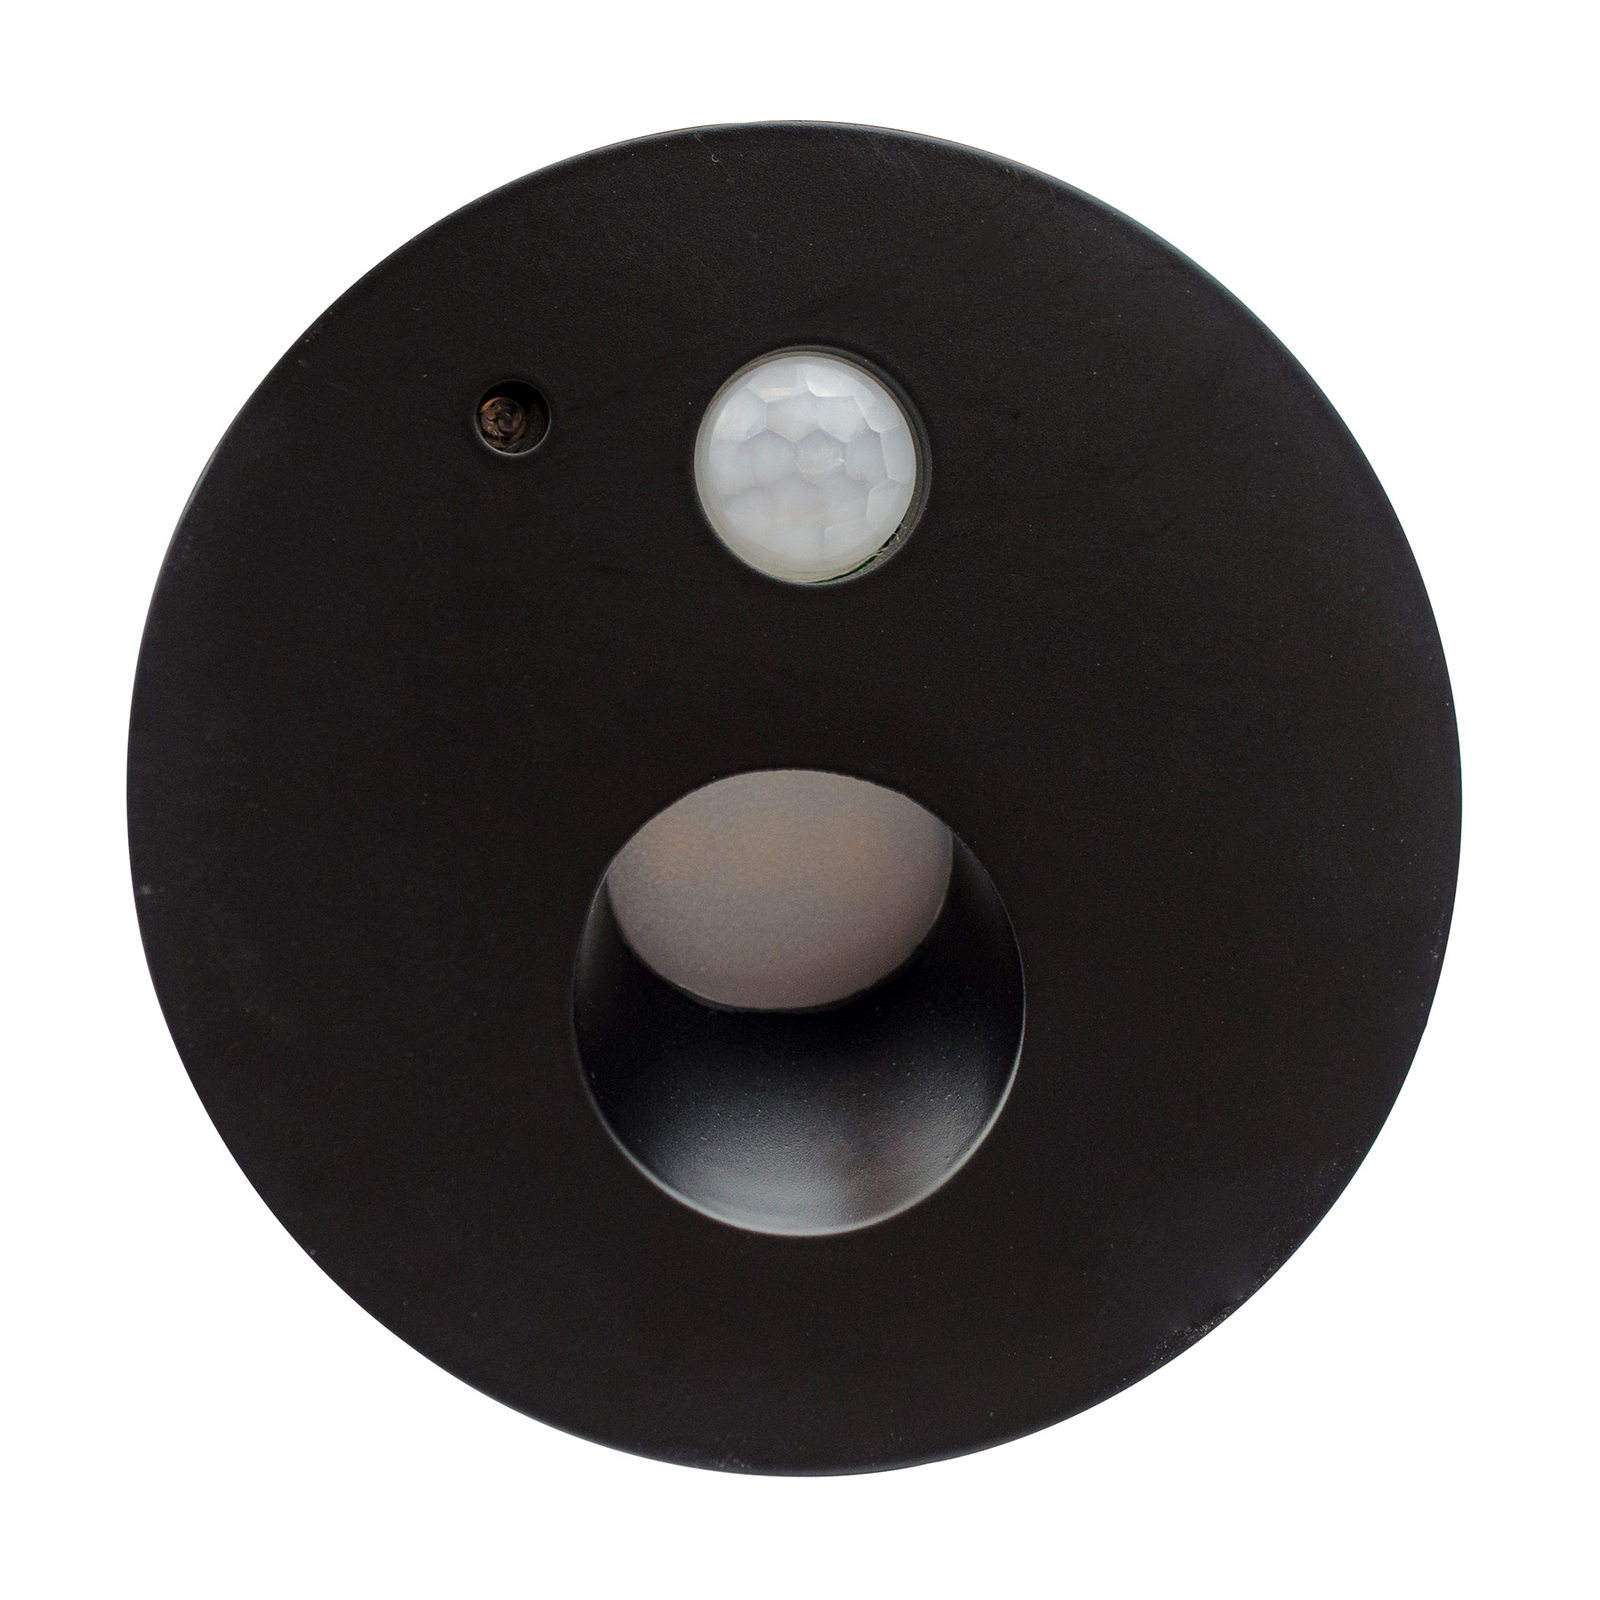 Arcchio Neru-LED-uppovalo tunnistin, pyöreä, musta